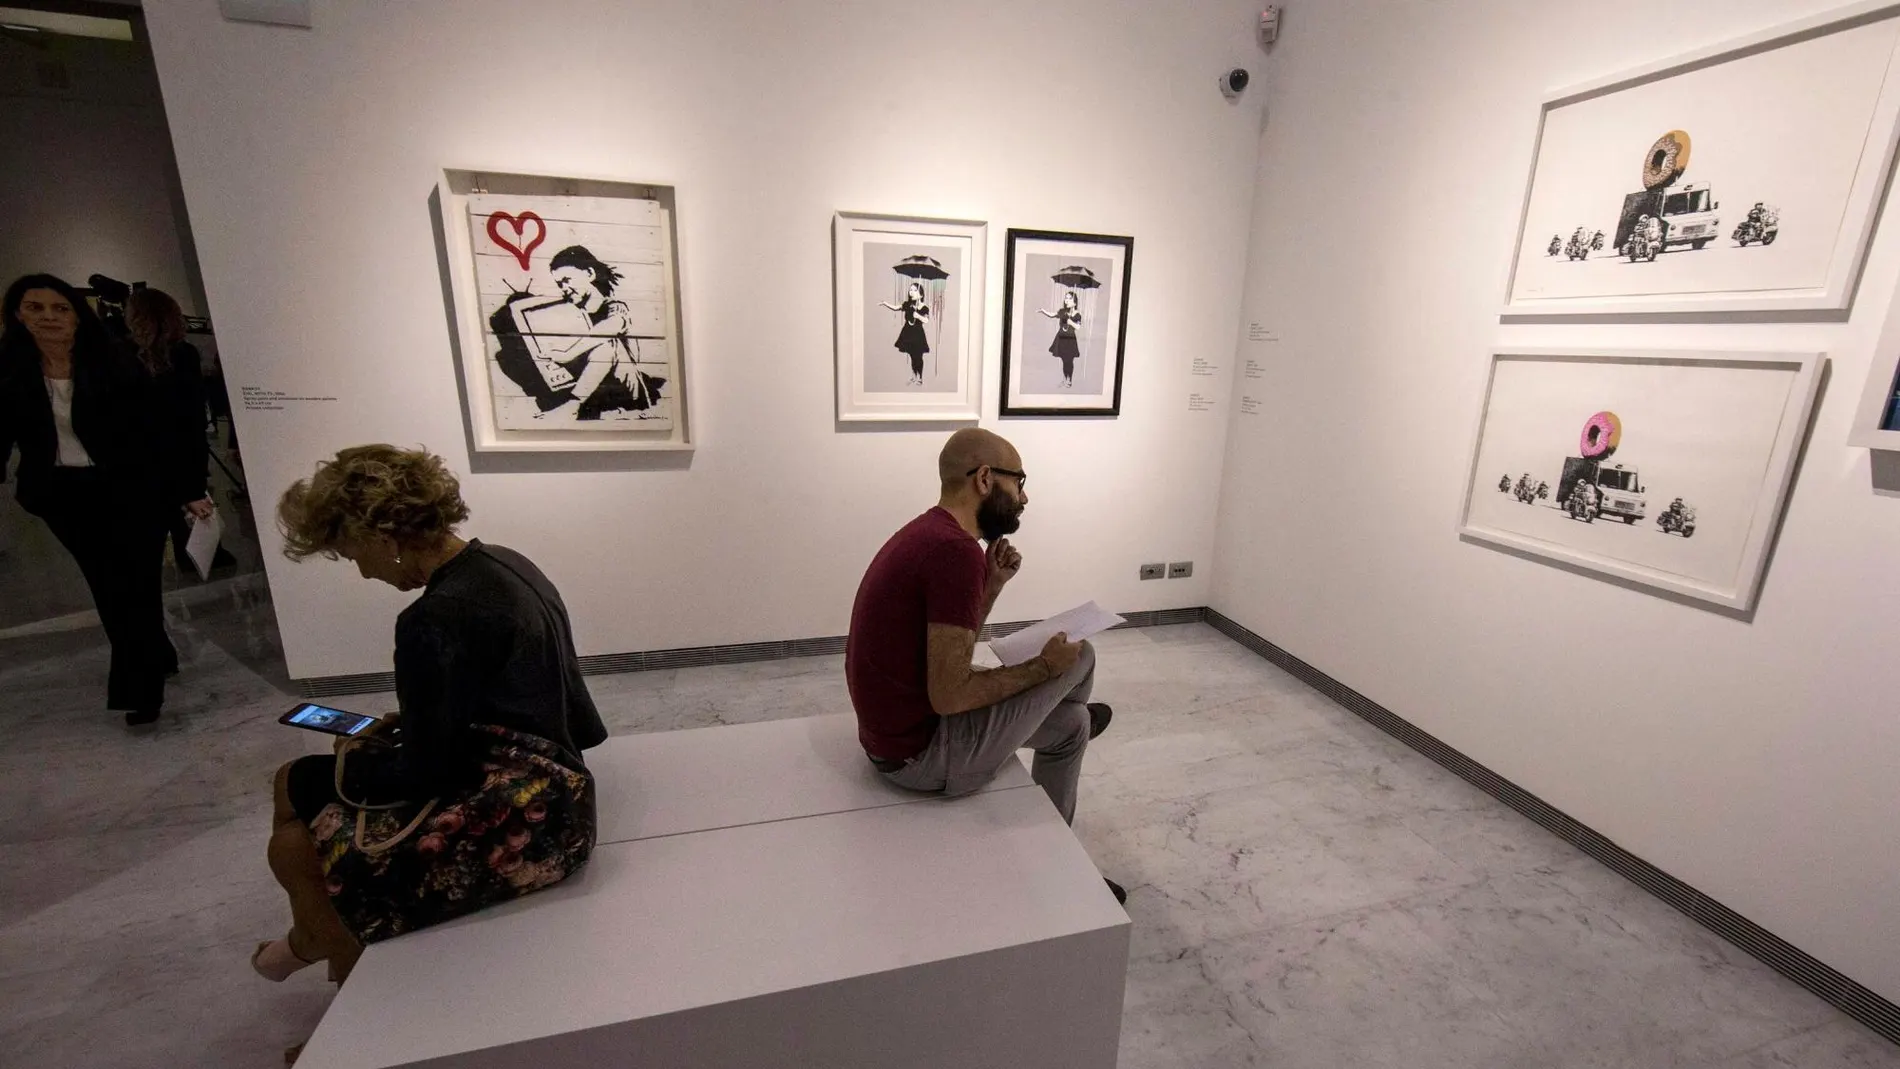 La obra de Bansky, en una exposición en Roma/Foto: Ap